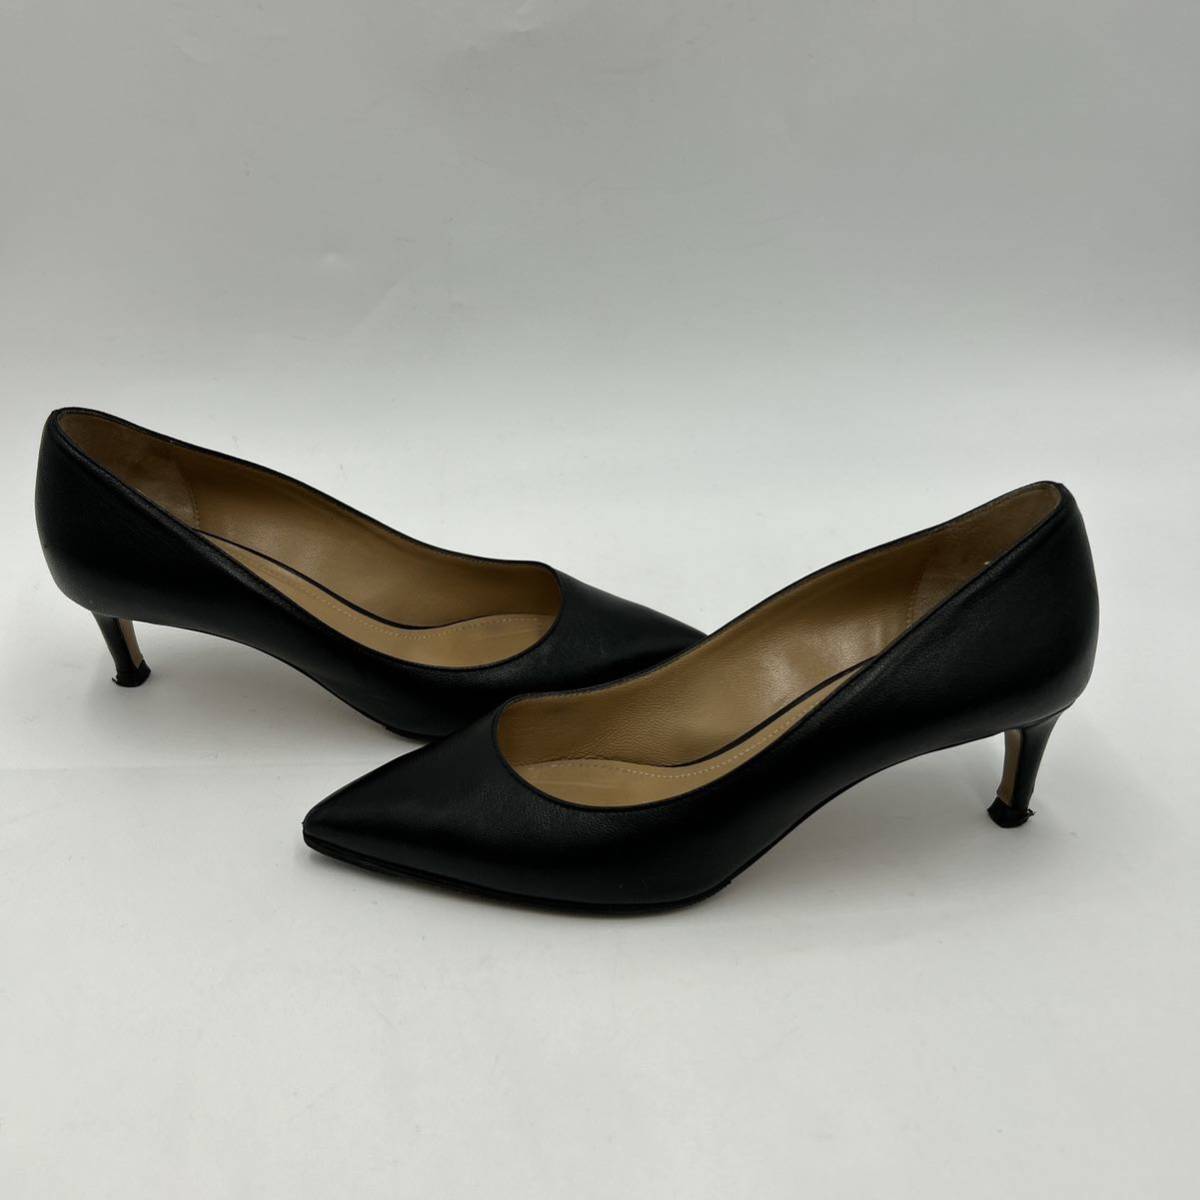 E @ イタリア製 '高級ラグジュアリー靴' BALLY バリー 本革 LEATHER ヒール パンプス EU36 22.5cm レディース 婦人靴 シューズ BLACK _画像3